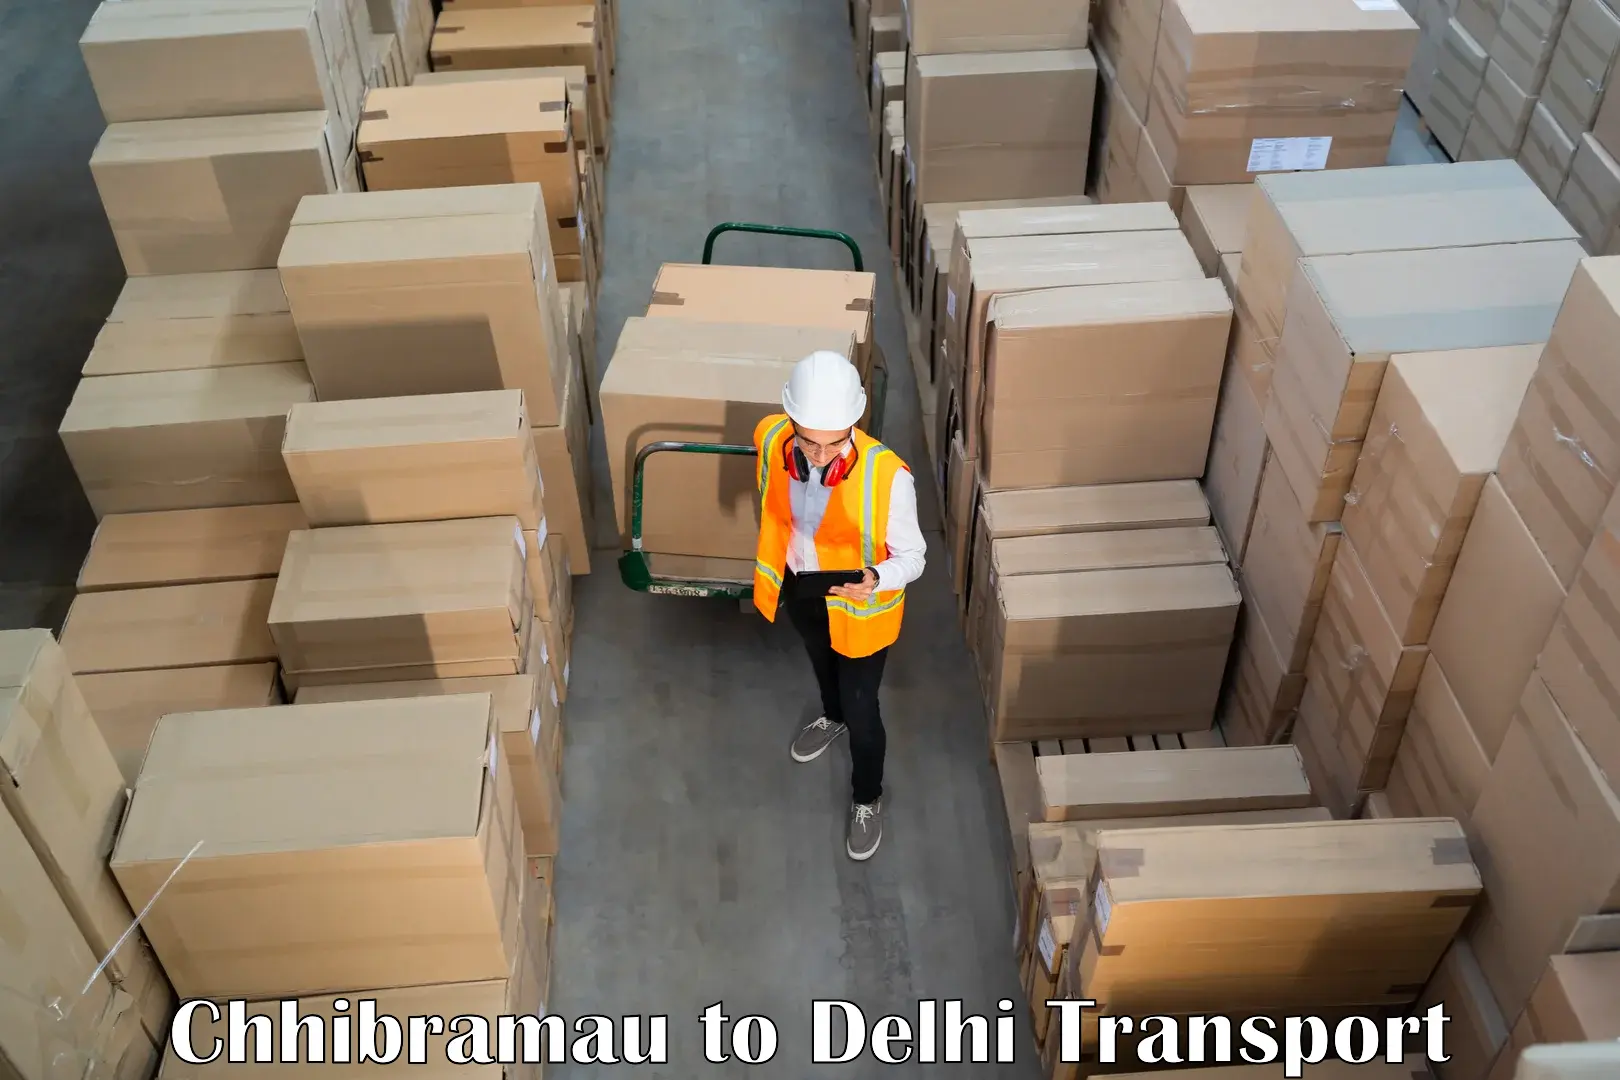 Furniture transport service Chhibramau to Burari